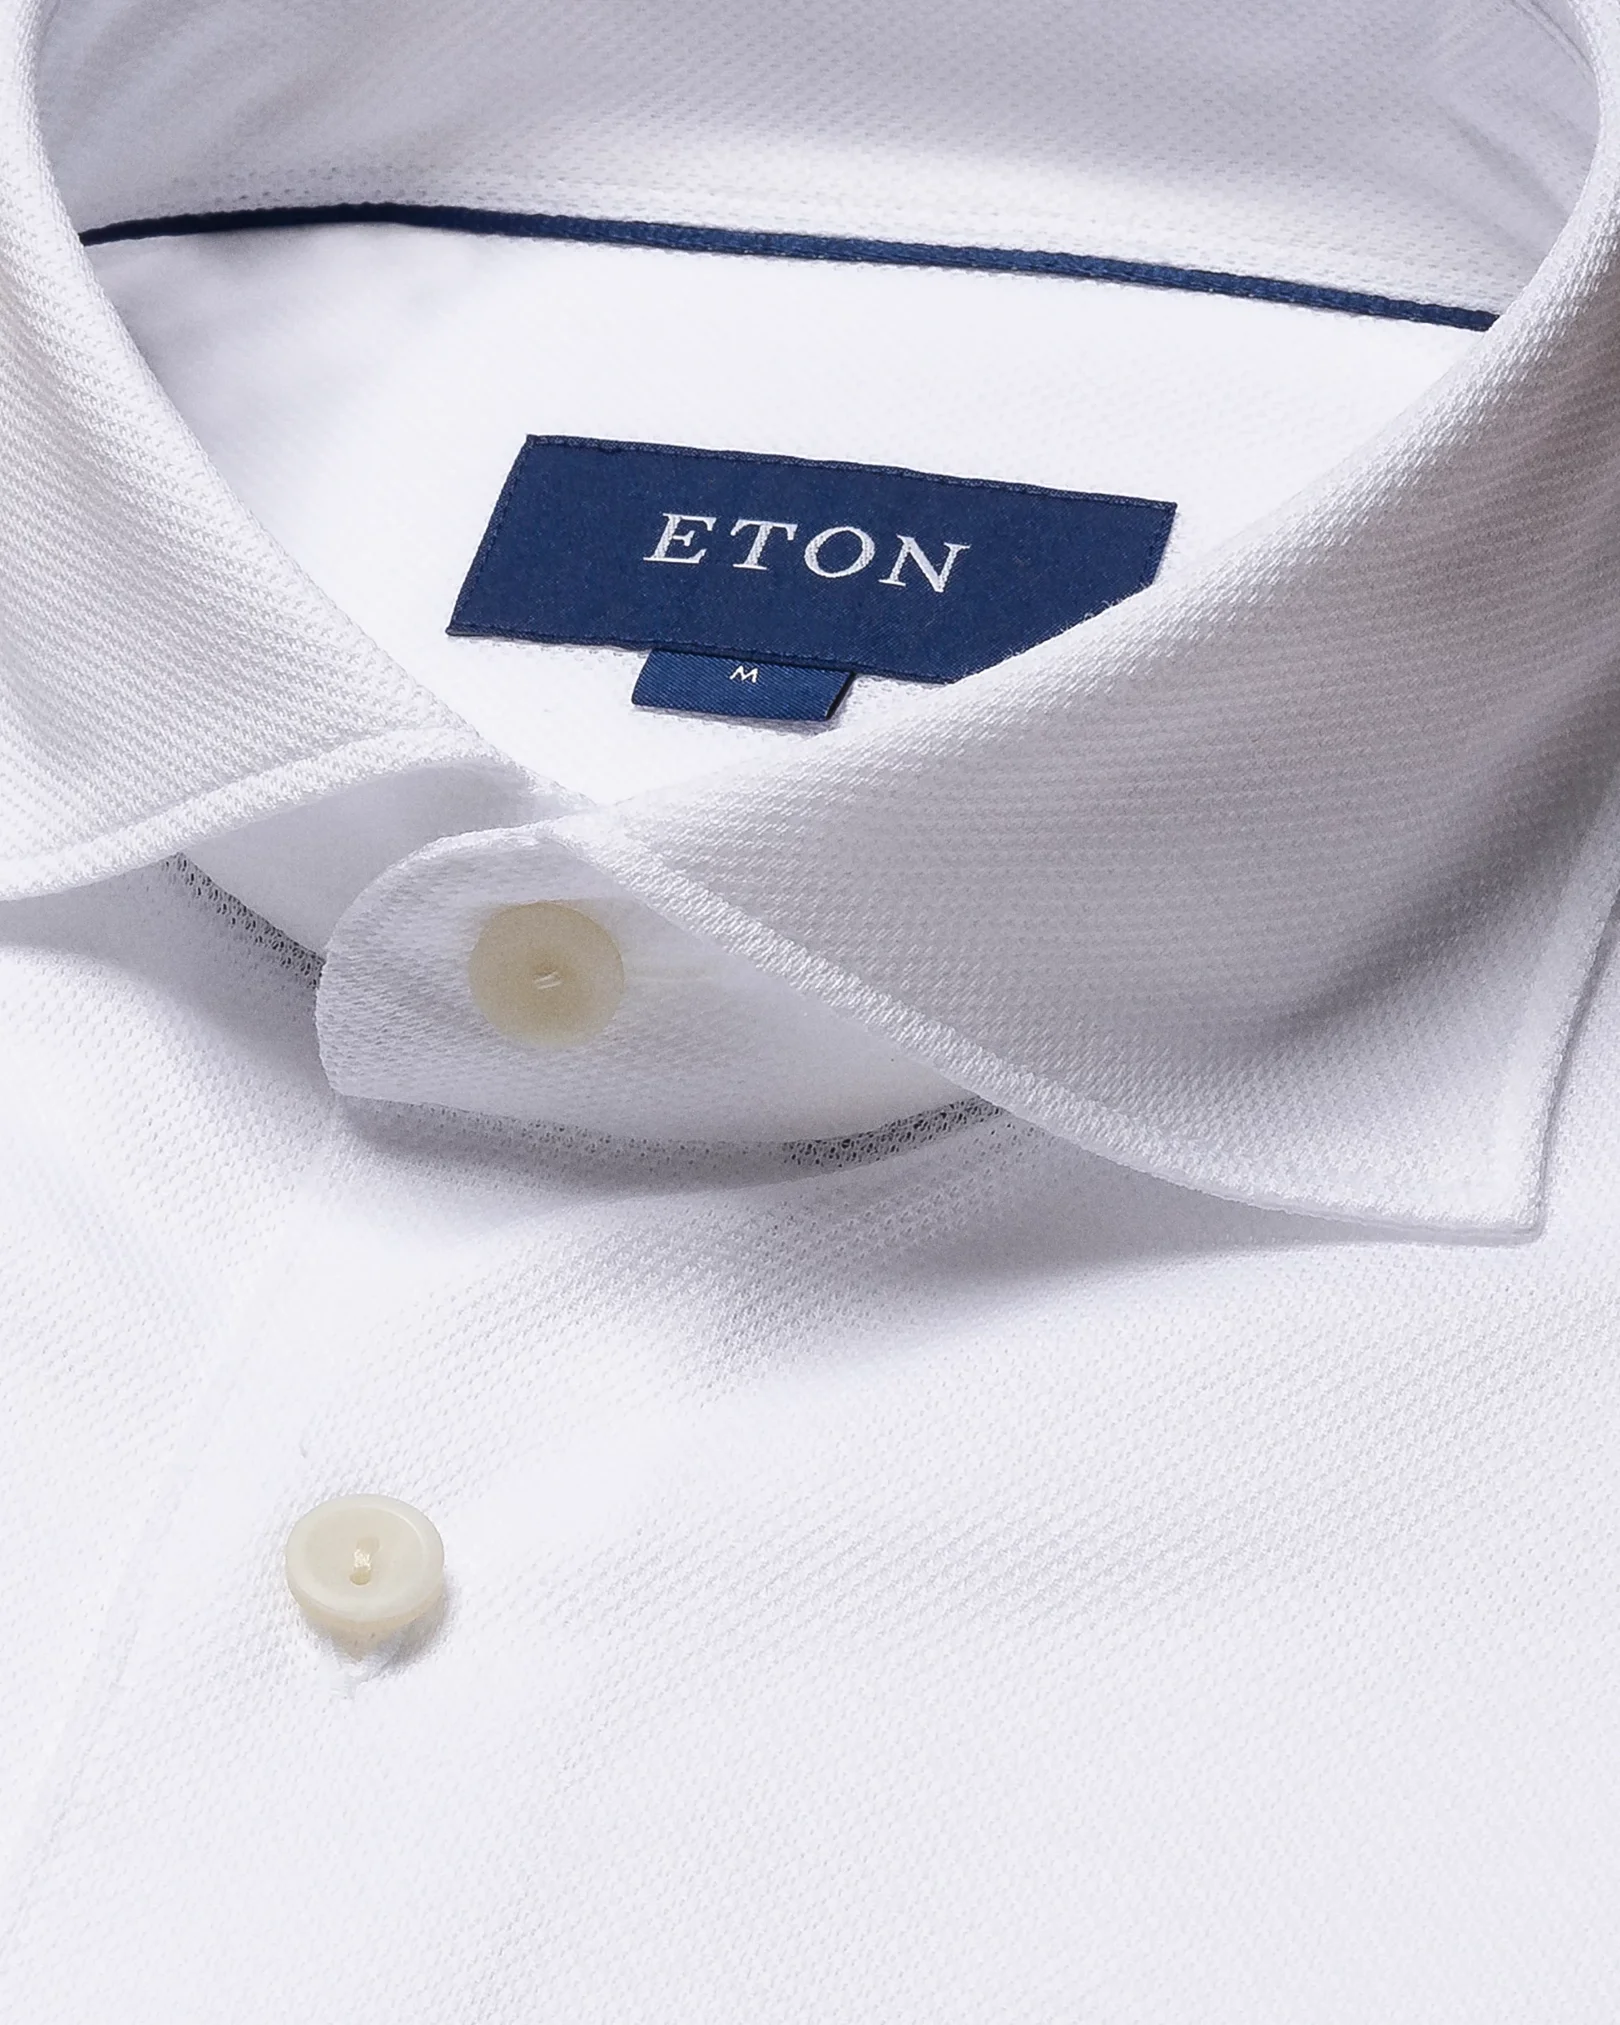 Eton - white pique wide spread jersey